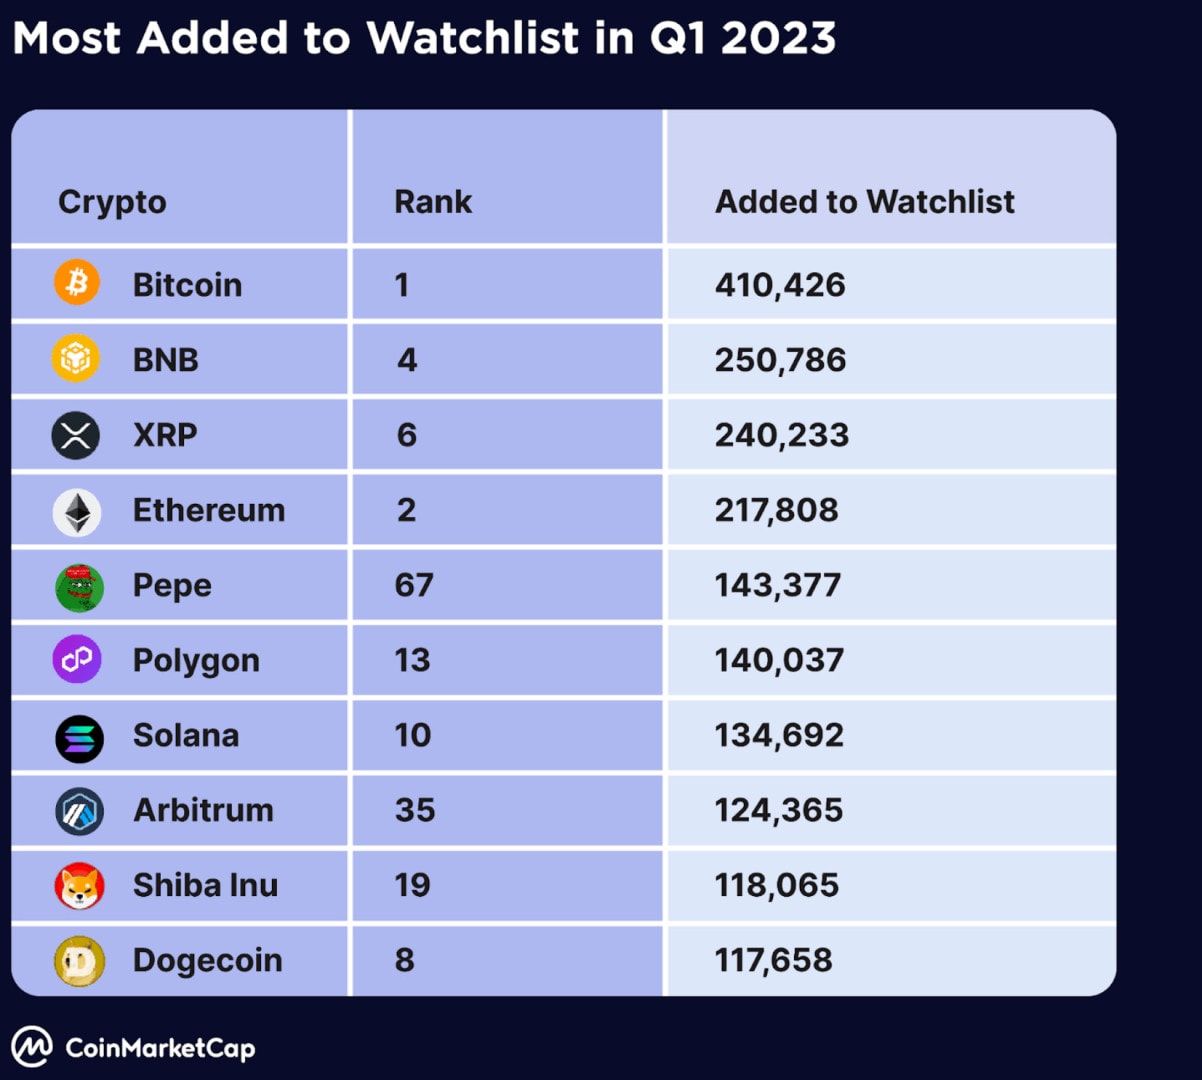 Le Bitcoin est la cryptomonnaie la plus surveillée par les utilisateurs de CoinMarketCap - 21 juillet 2023. 